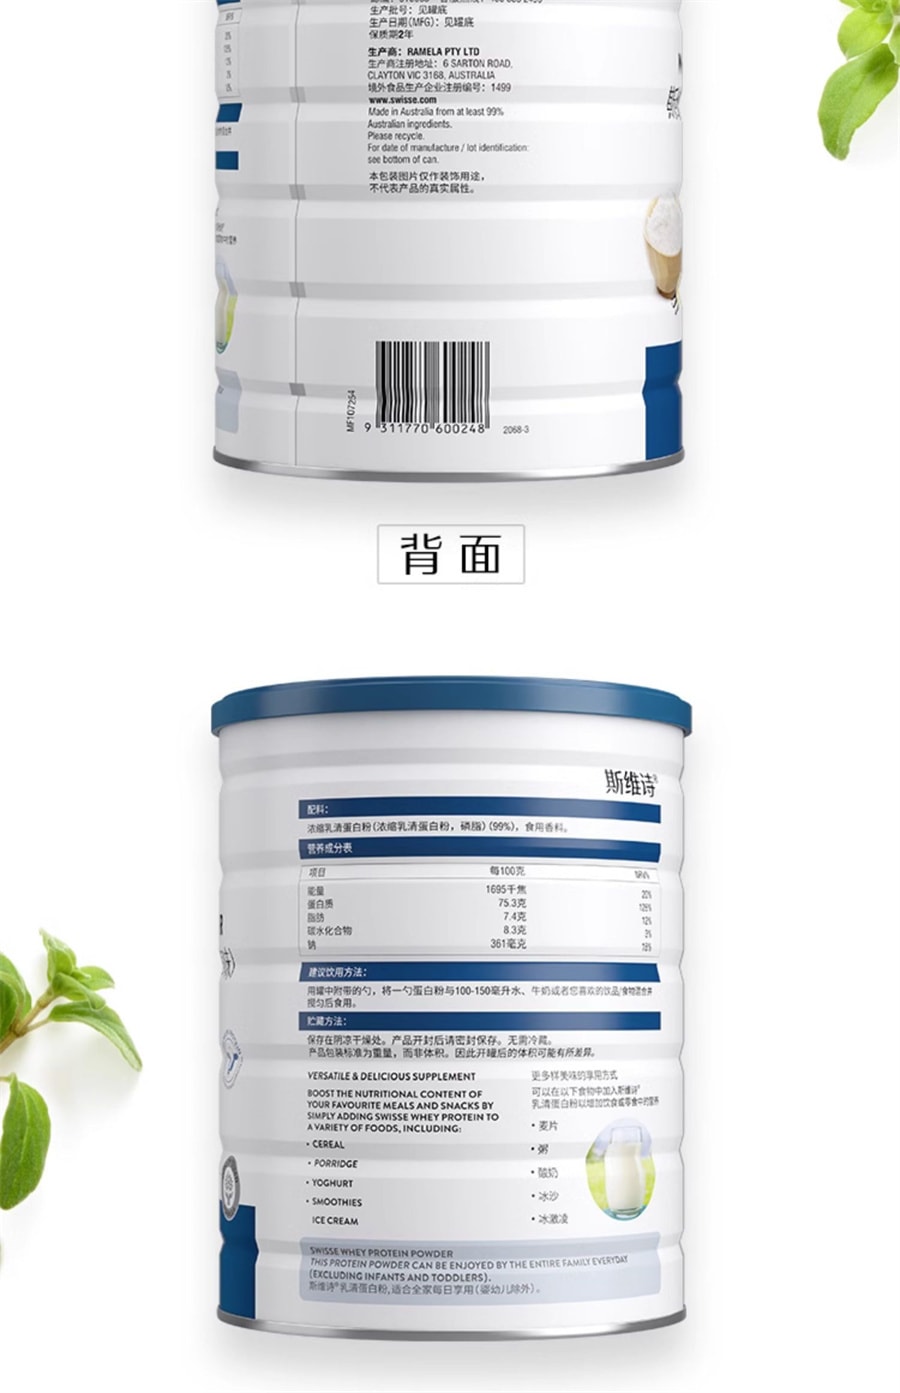 【中国直邮】Swisse斯维诗  乳清蛋白质粉中老年免疫力男女成人蛋白营养粉  450g/罐